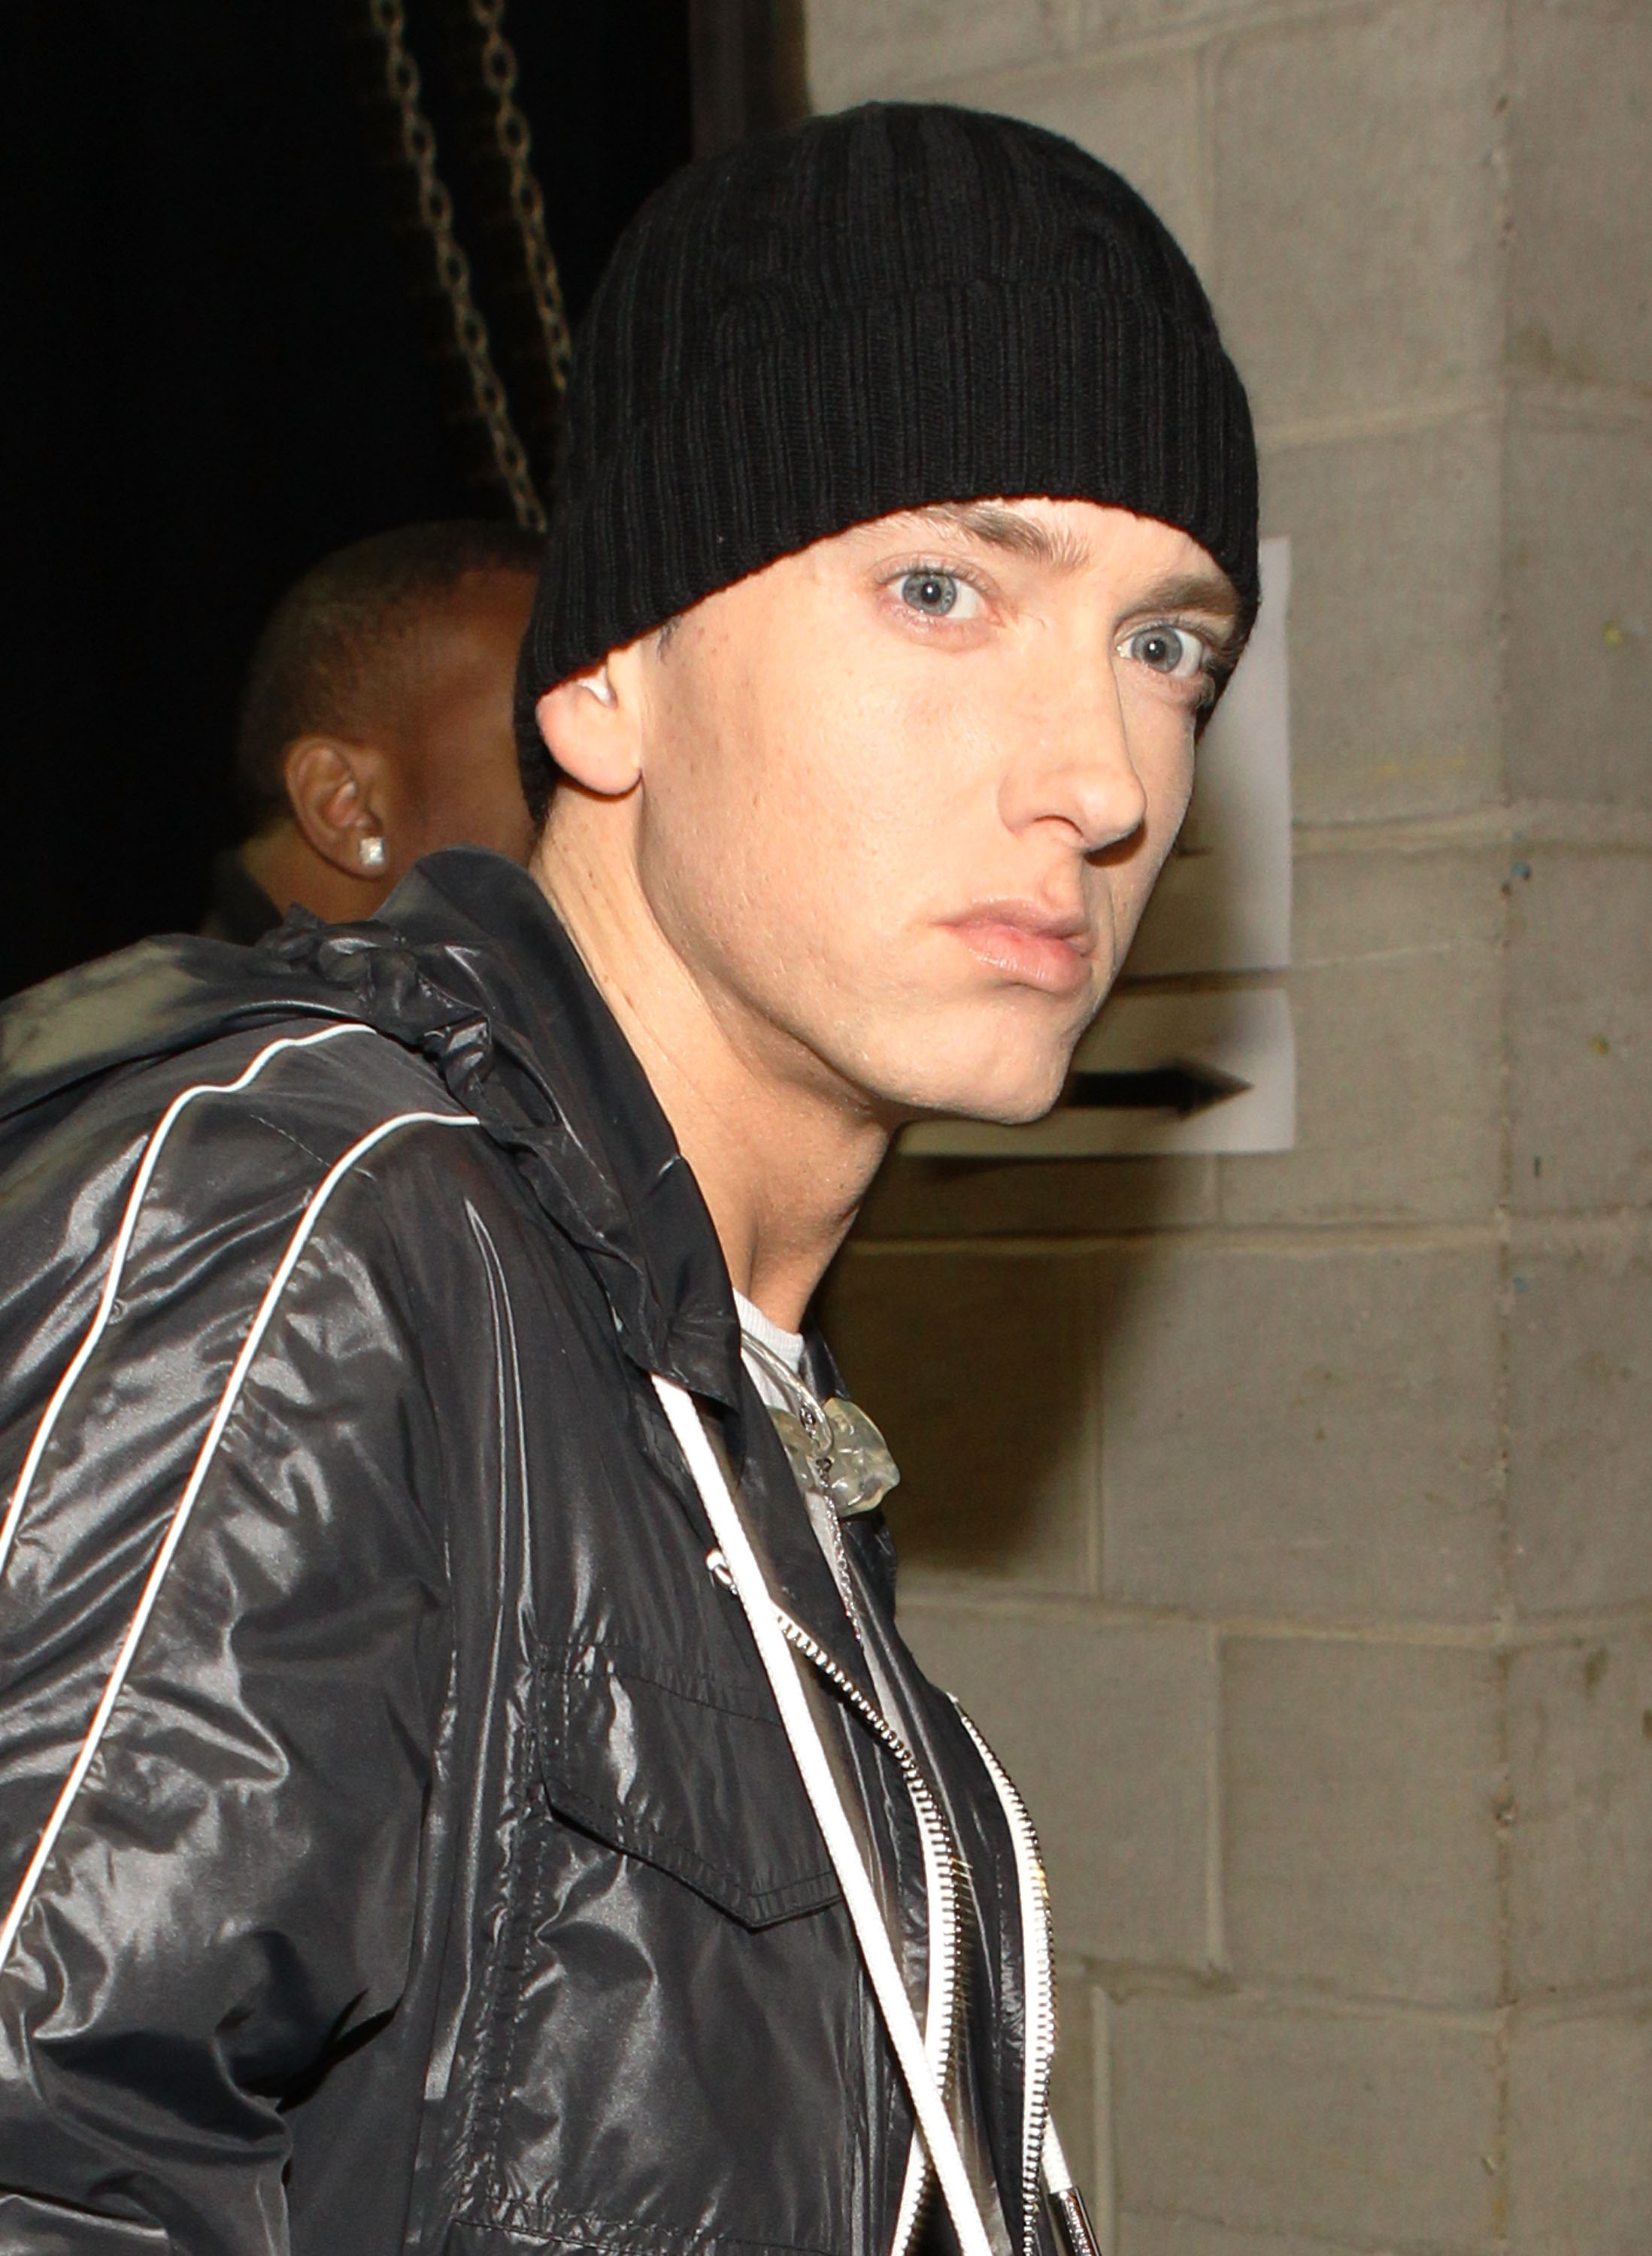 Eminem lors de la 52e cérémonie annuelle des Grammy Awards le 31 janvier 2010 à Los Angeles, Californie | Source : Getty Images